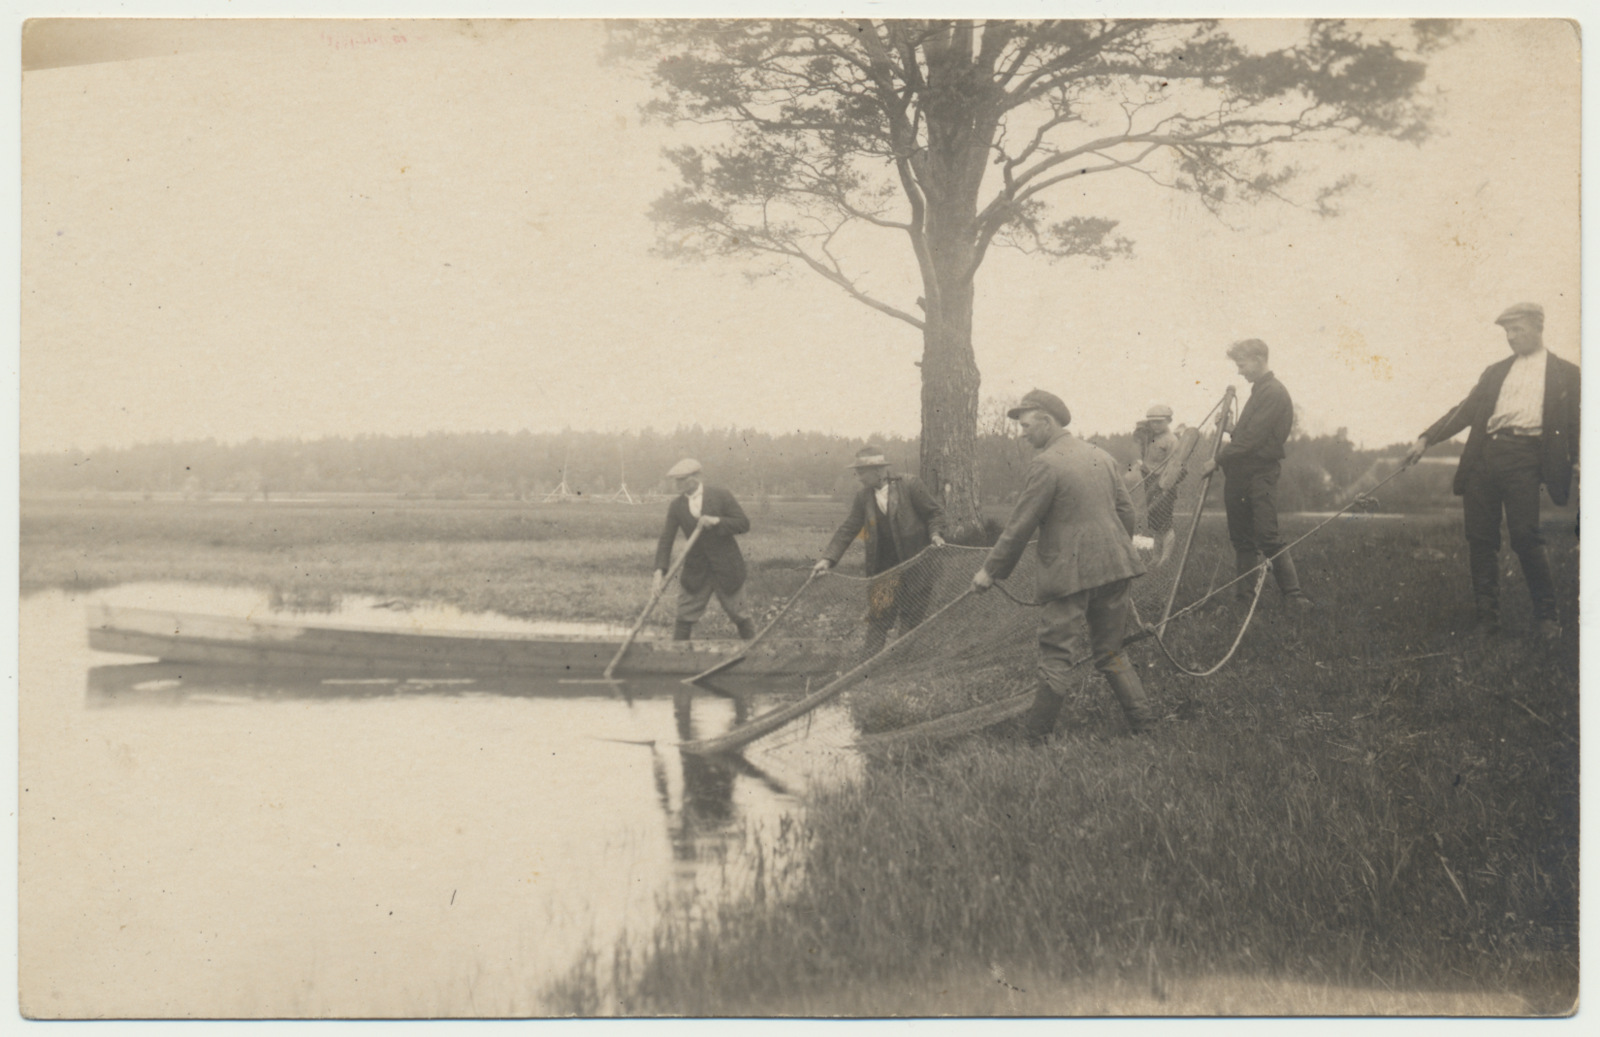 foto Kõpu khk, noodavedu (kalapüük) Kõpu jõel u 1925 foto K.Palmeus